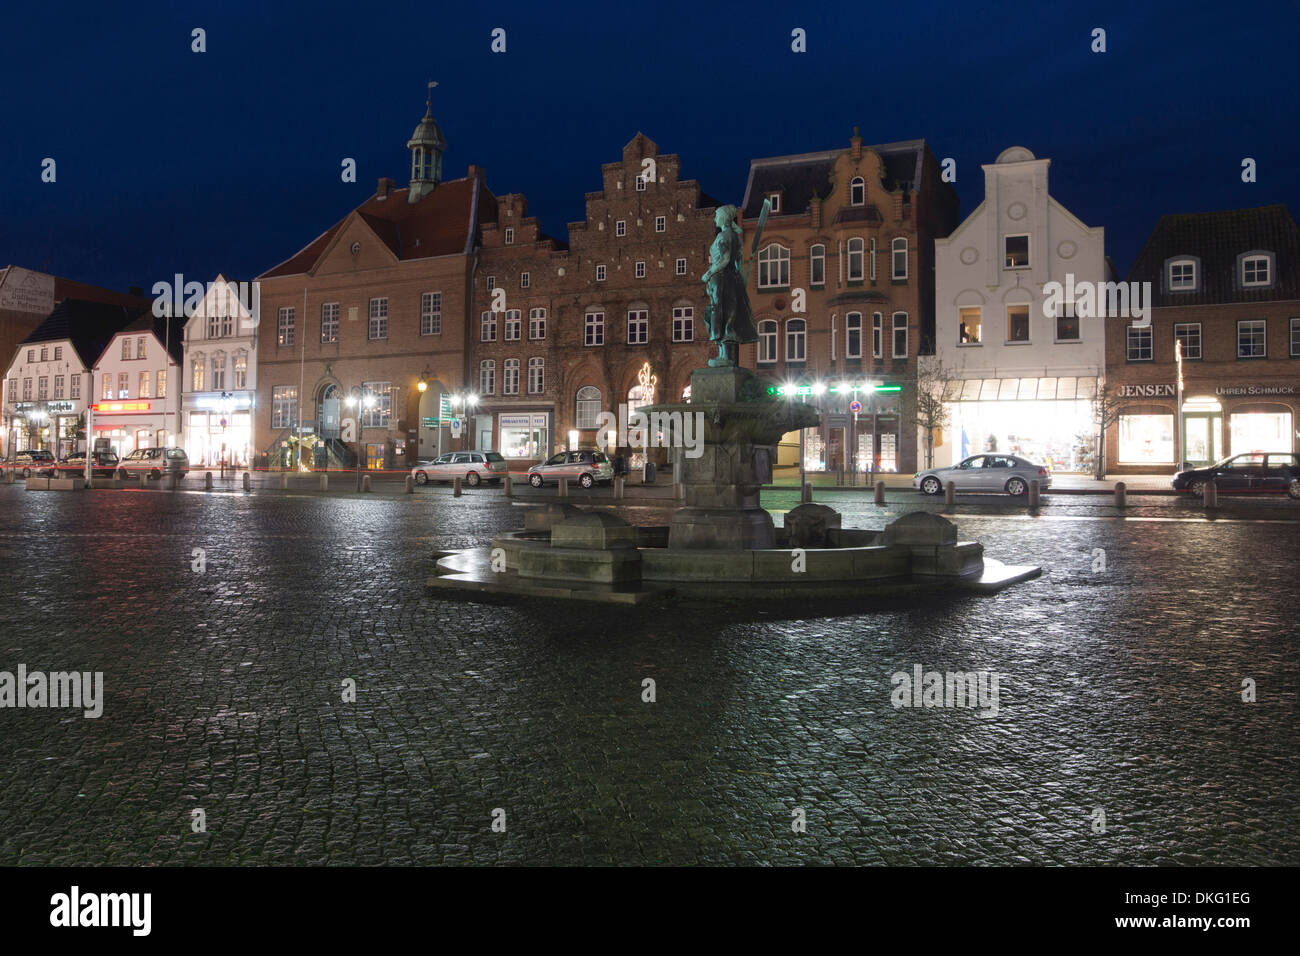 Tine-brunnen fontana con il municipio storico di notte, husum città, SCHLESWIG-HOLSTEIN, Germania, Europa Foto Stock